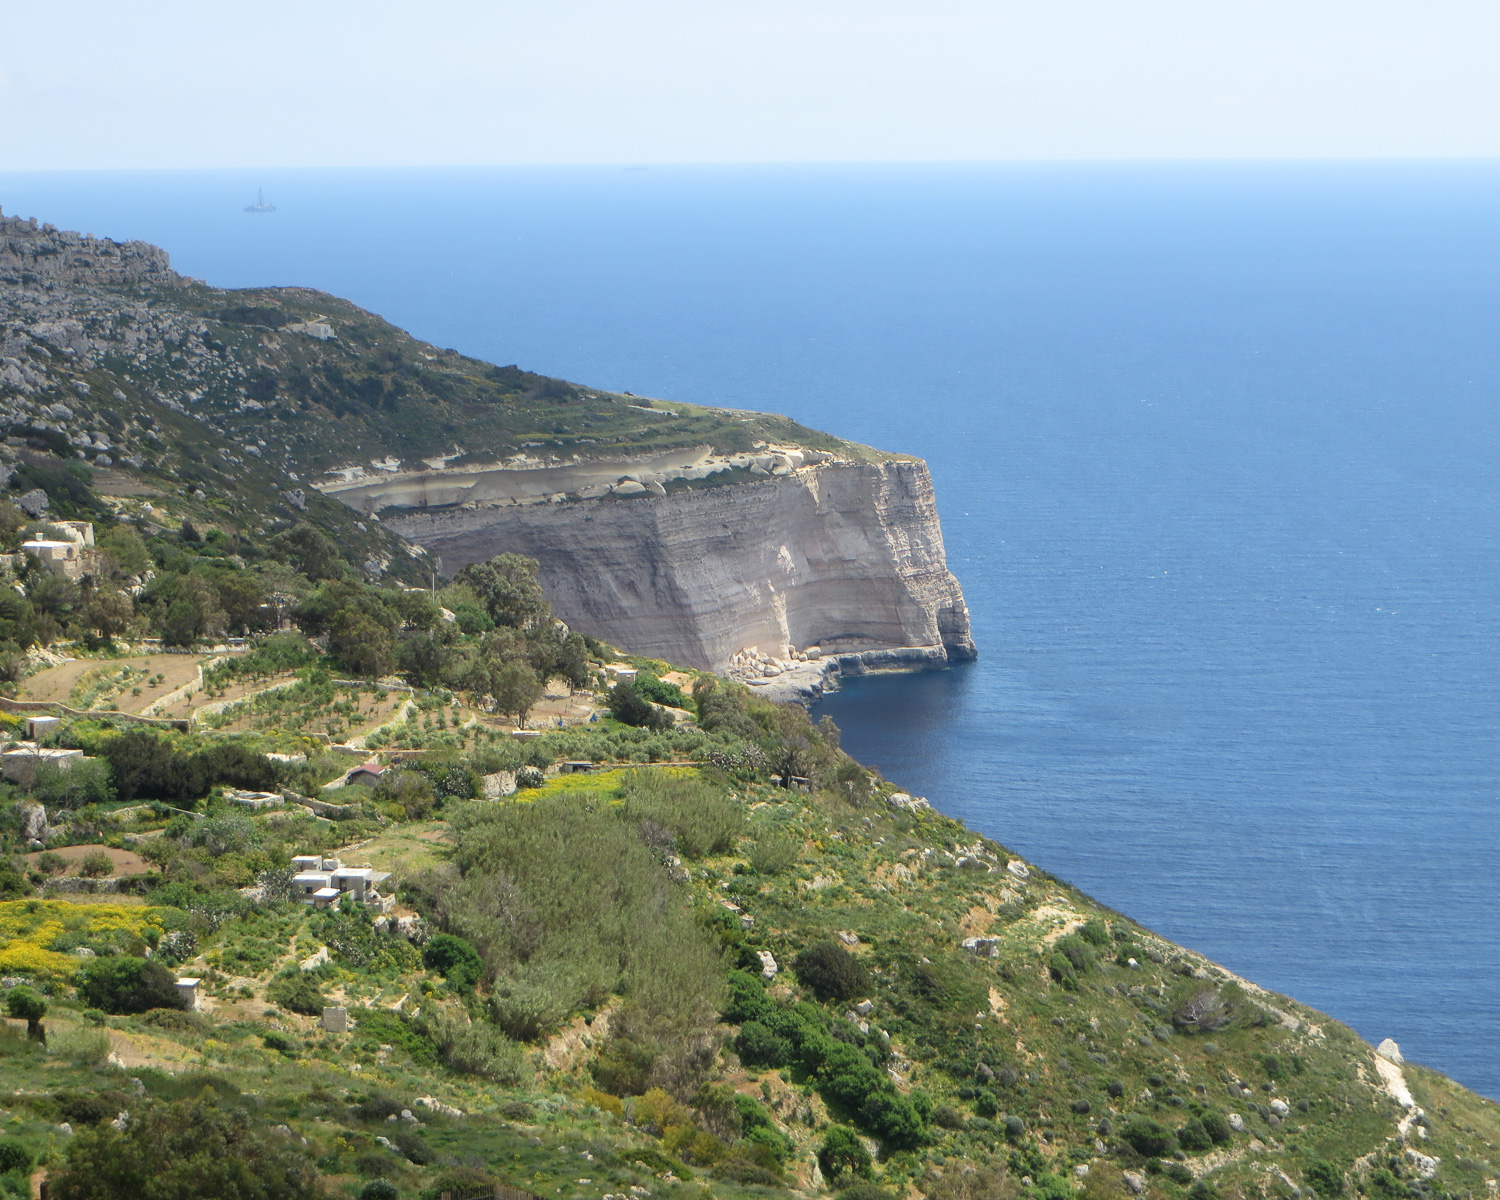 Dingli Cliffs Malta by Bernt Rostad on Flickr